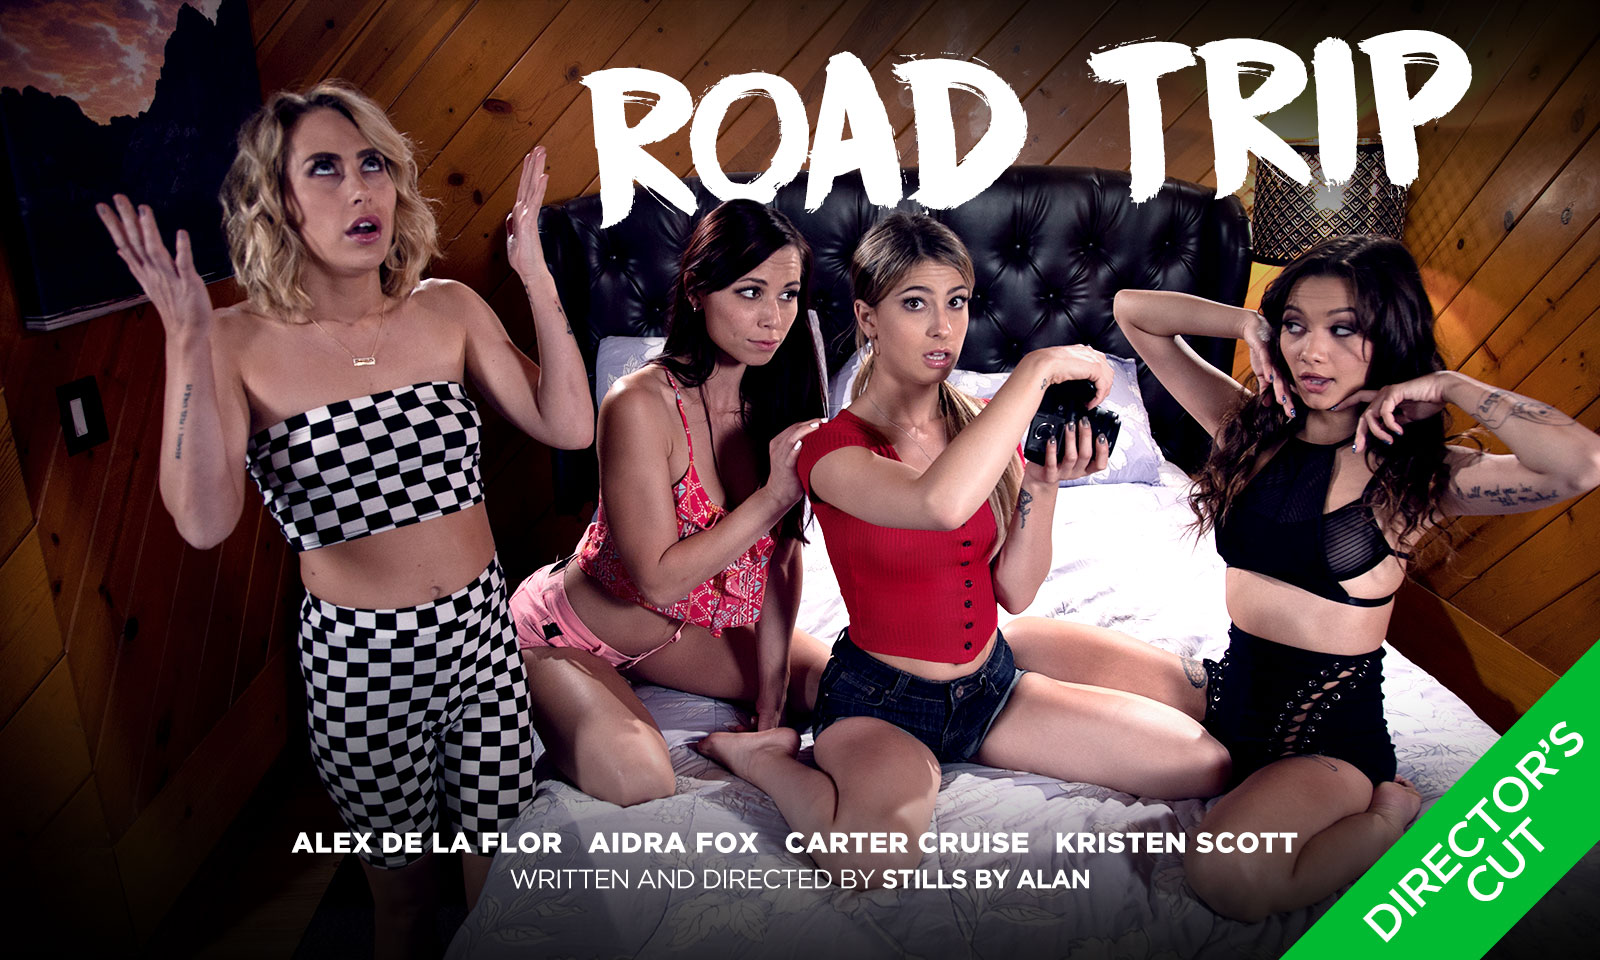 Girlsway New Fantasy Scene Has Kristen Scott On A 'Road Trip'